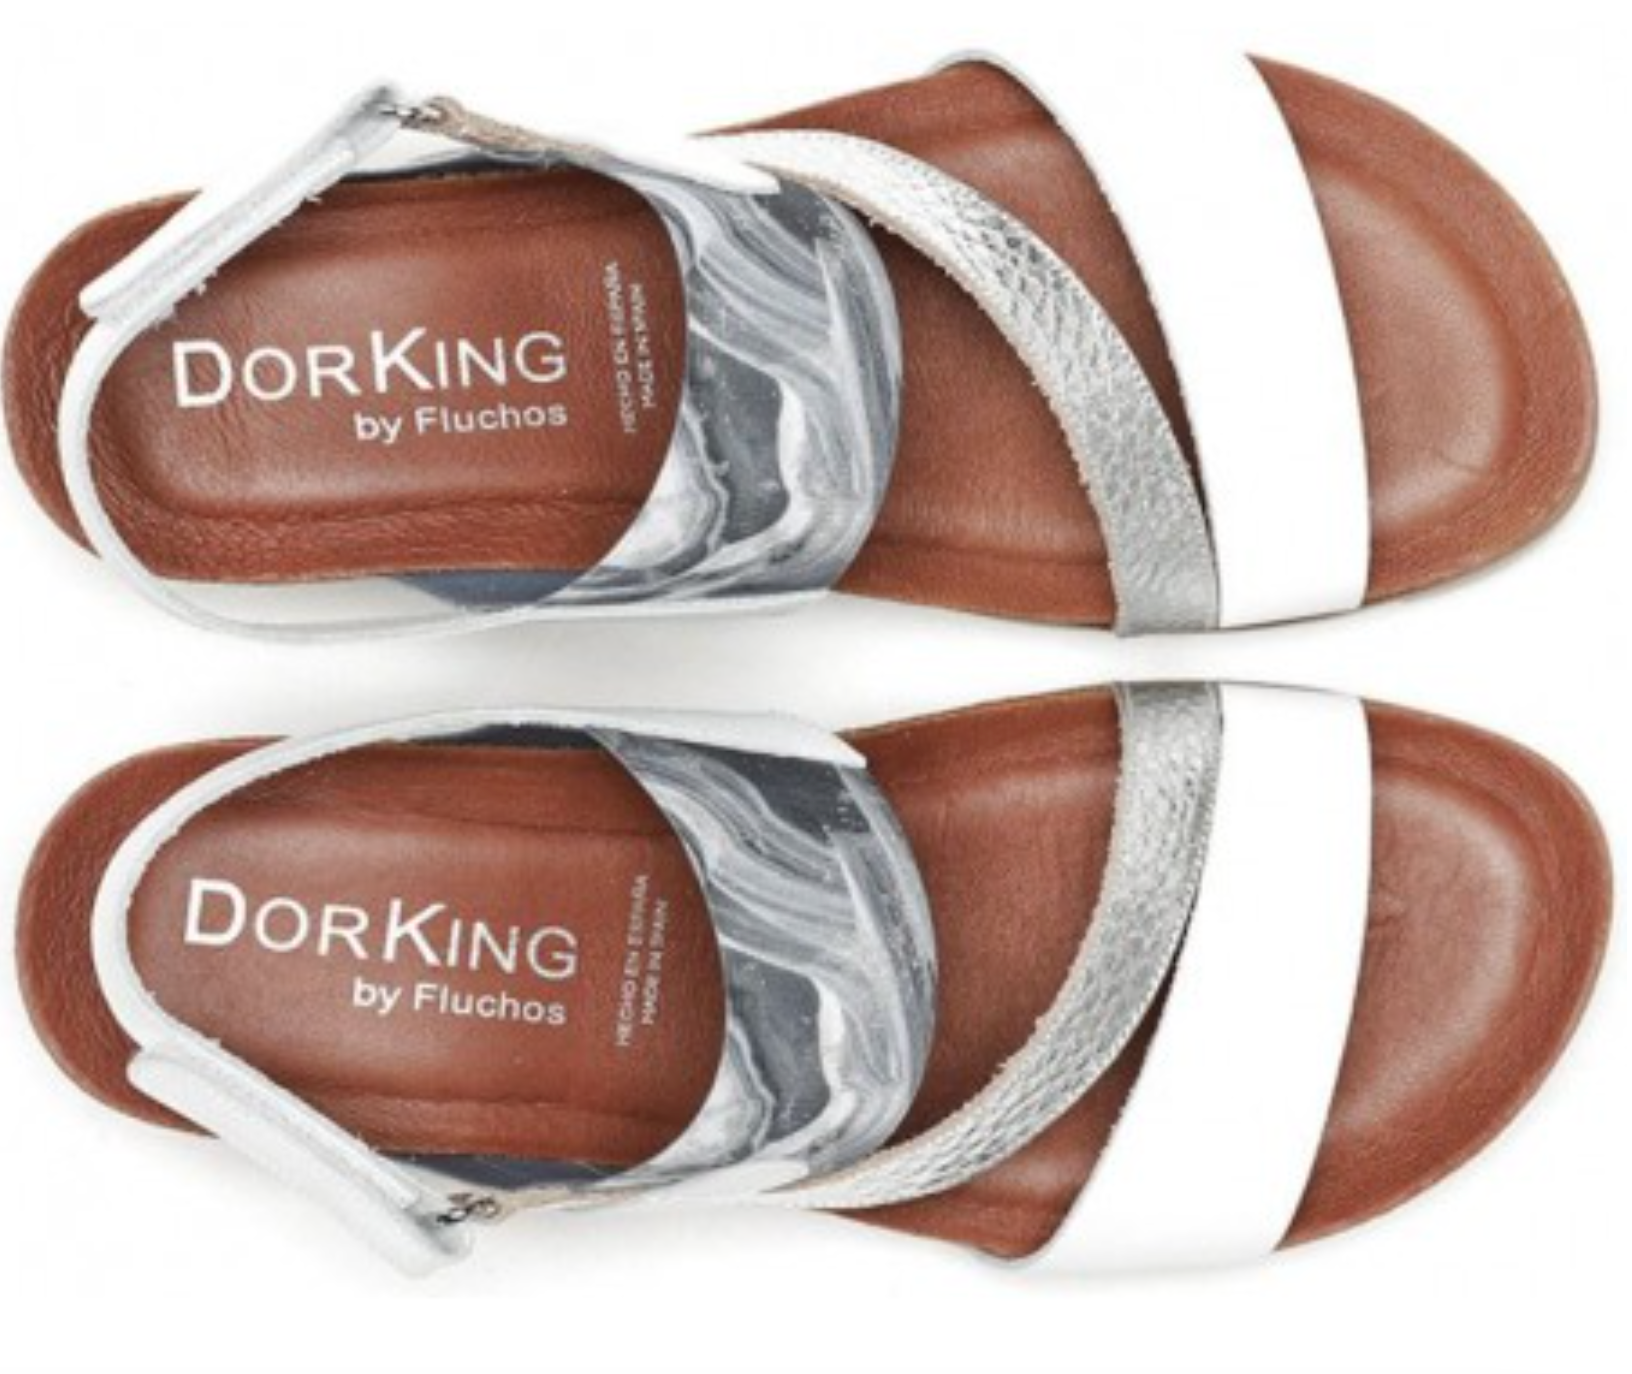 Dorking "D8786" White/Silver - Wedge Sandal